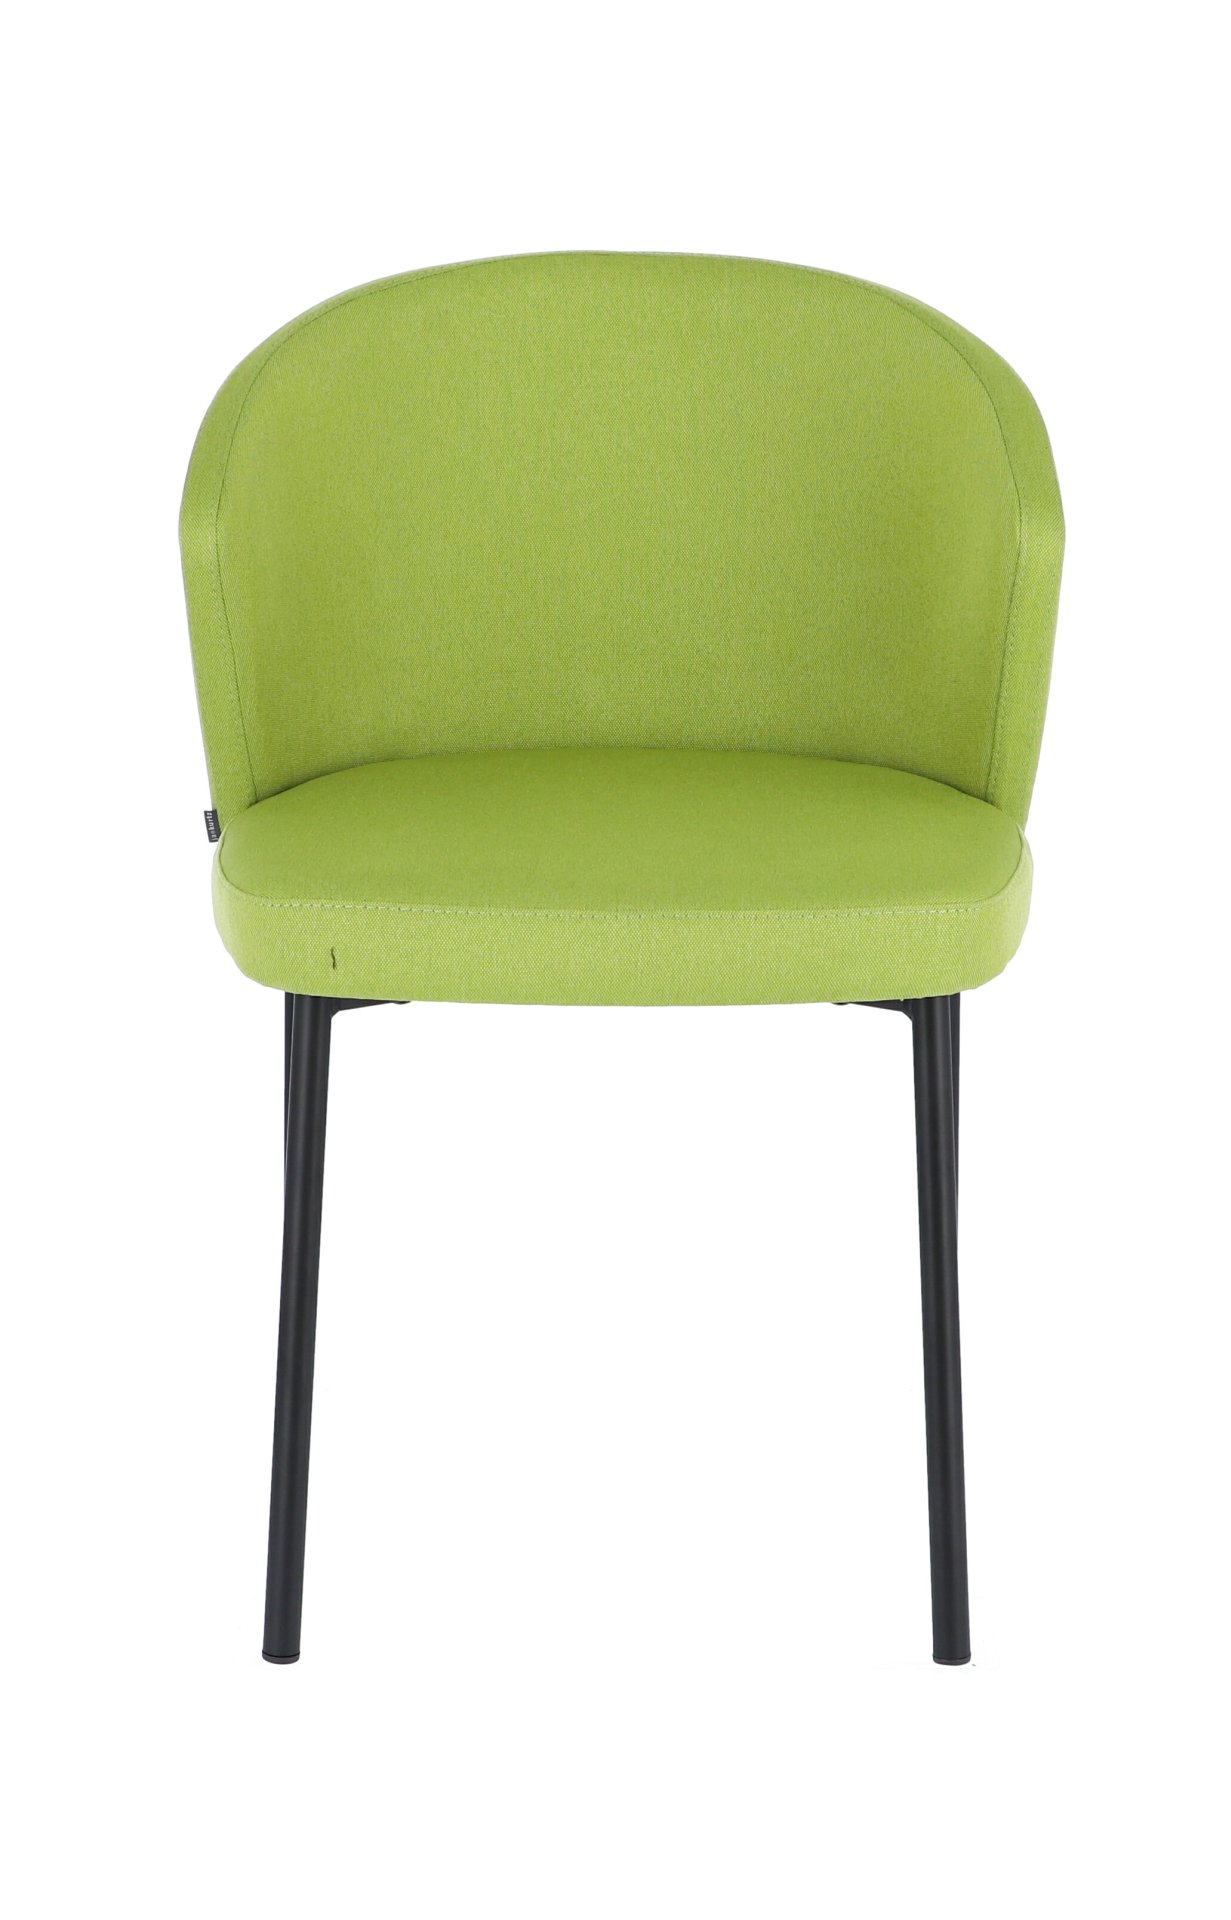 Der moderne Stuhl Mila wurde aus einem Metall Gestell hergestellt. Die Sitz- und Rückenfläche ist aus einem Stoff Bezug. Die Farbe des Stuhls ist Grün. Es ist ein Produkt der Marke Jan Kurtz.